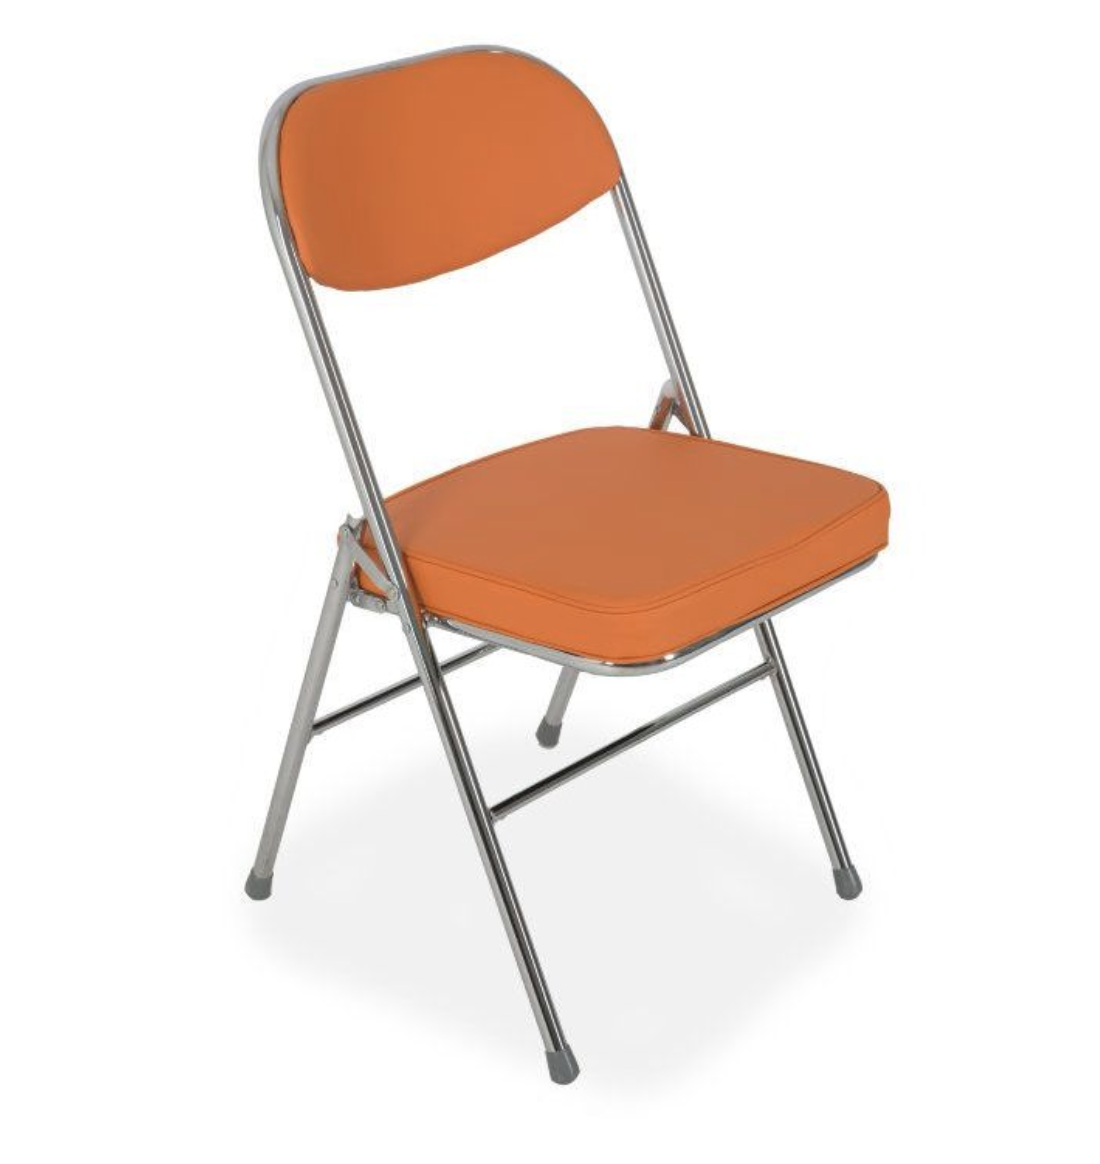 Купить оранжевый стул. Складной стул s108. Стул складной s108 Beige. Стул складной s108 Black. Стул складной s108 ванильный.